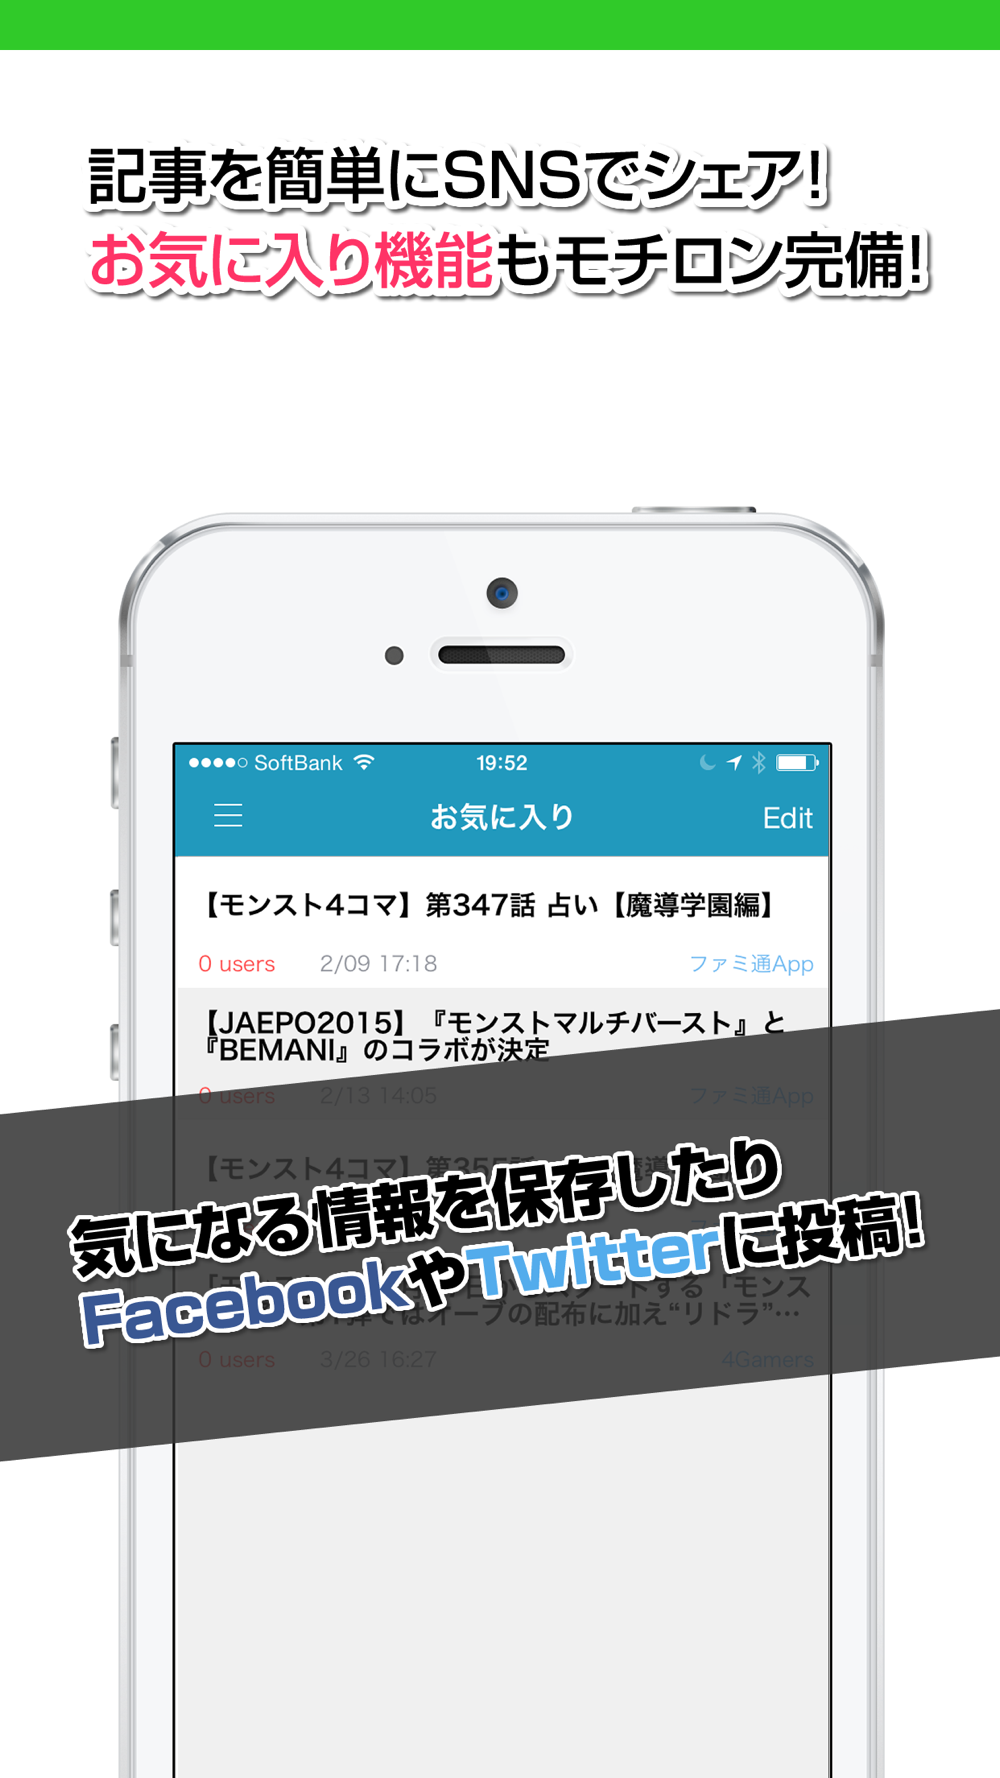 攻略ニュースまとめ速報 For モンスターストライク モンスト Free Download App For Iphone Steprimo Com